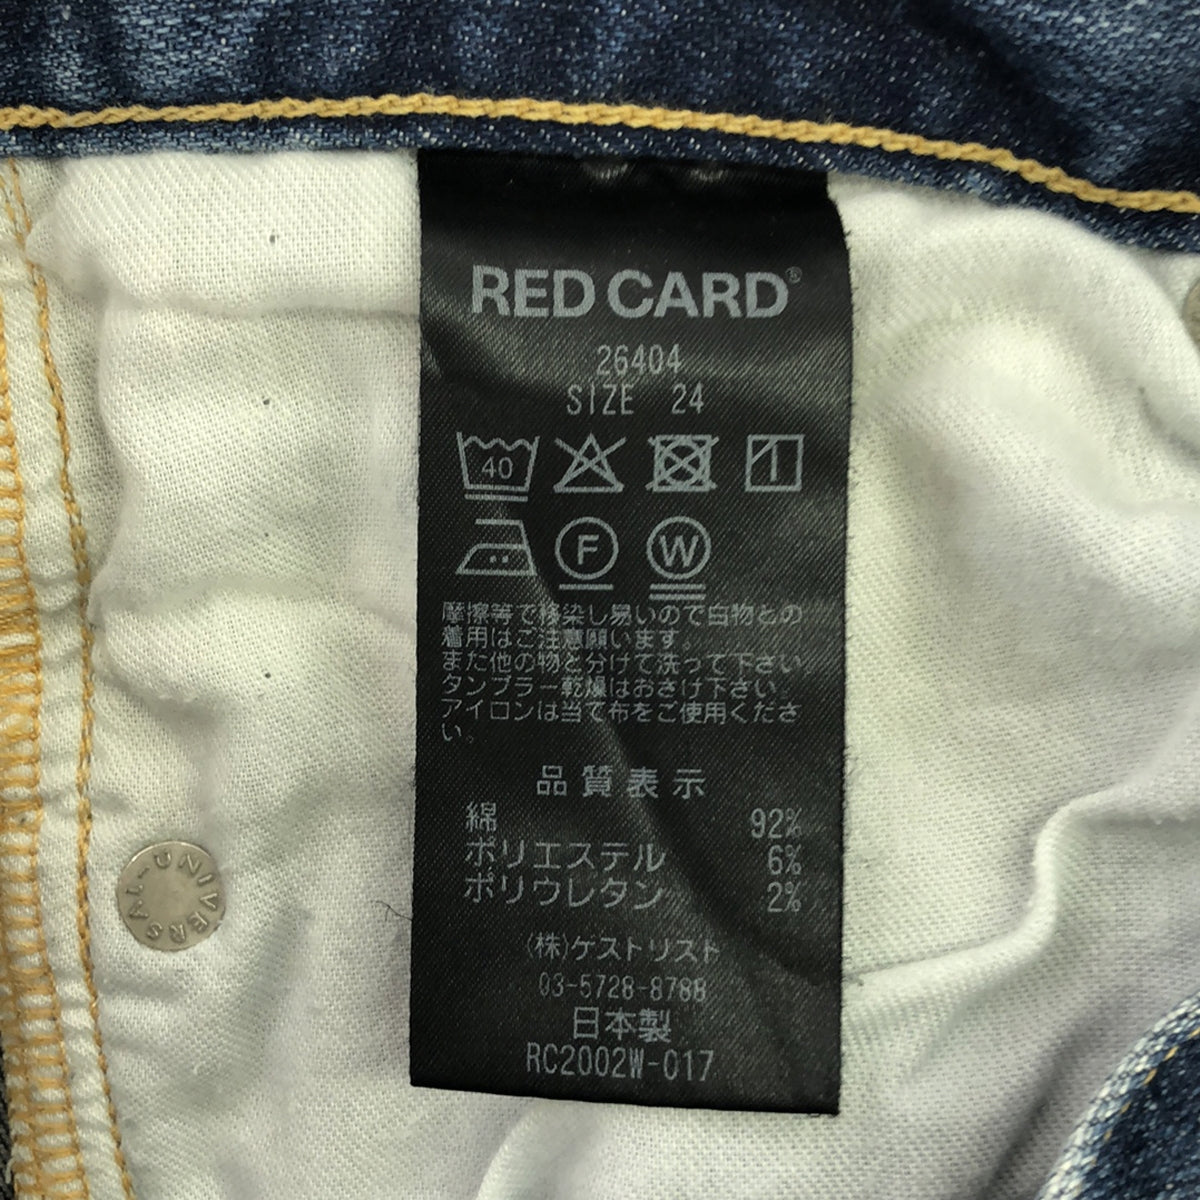 RED CARD / レッドカード | 26404 ストレッチ クロップド デニムパンツ | 24 |